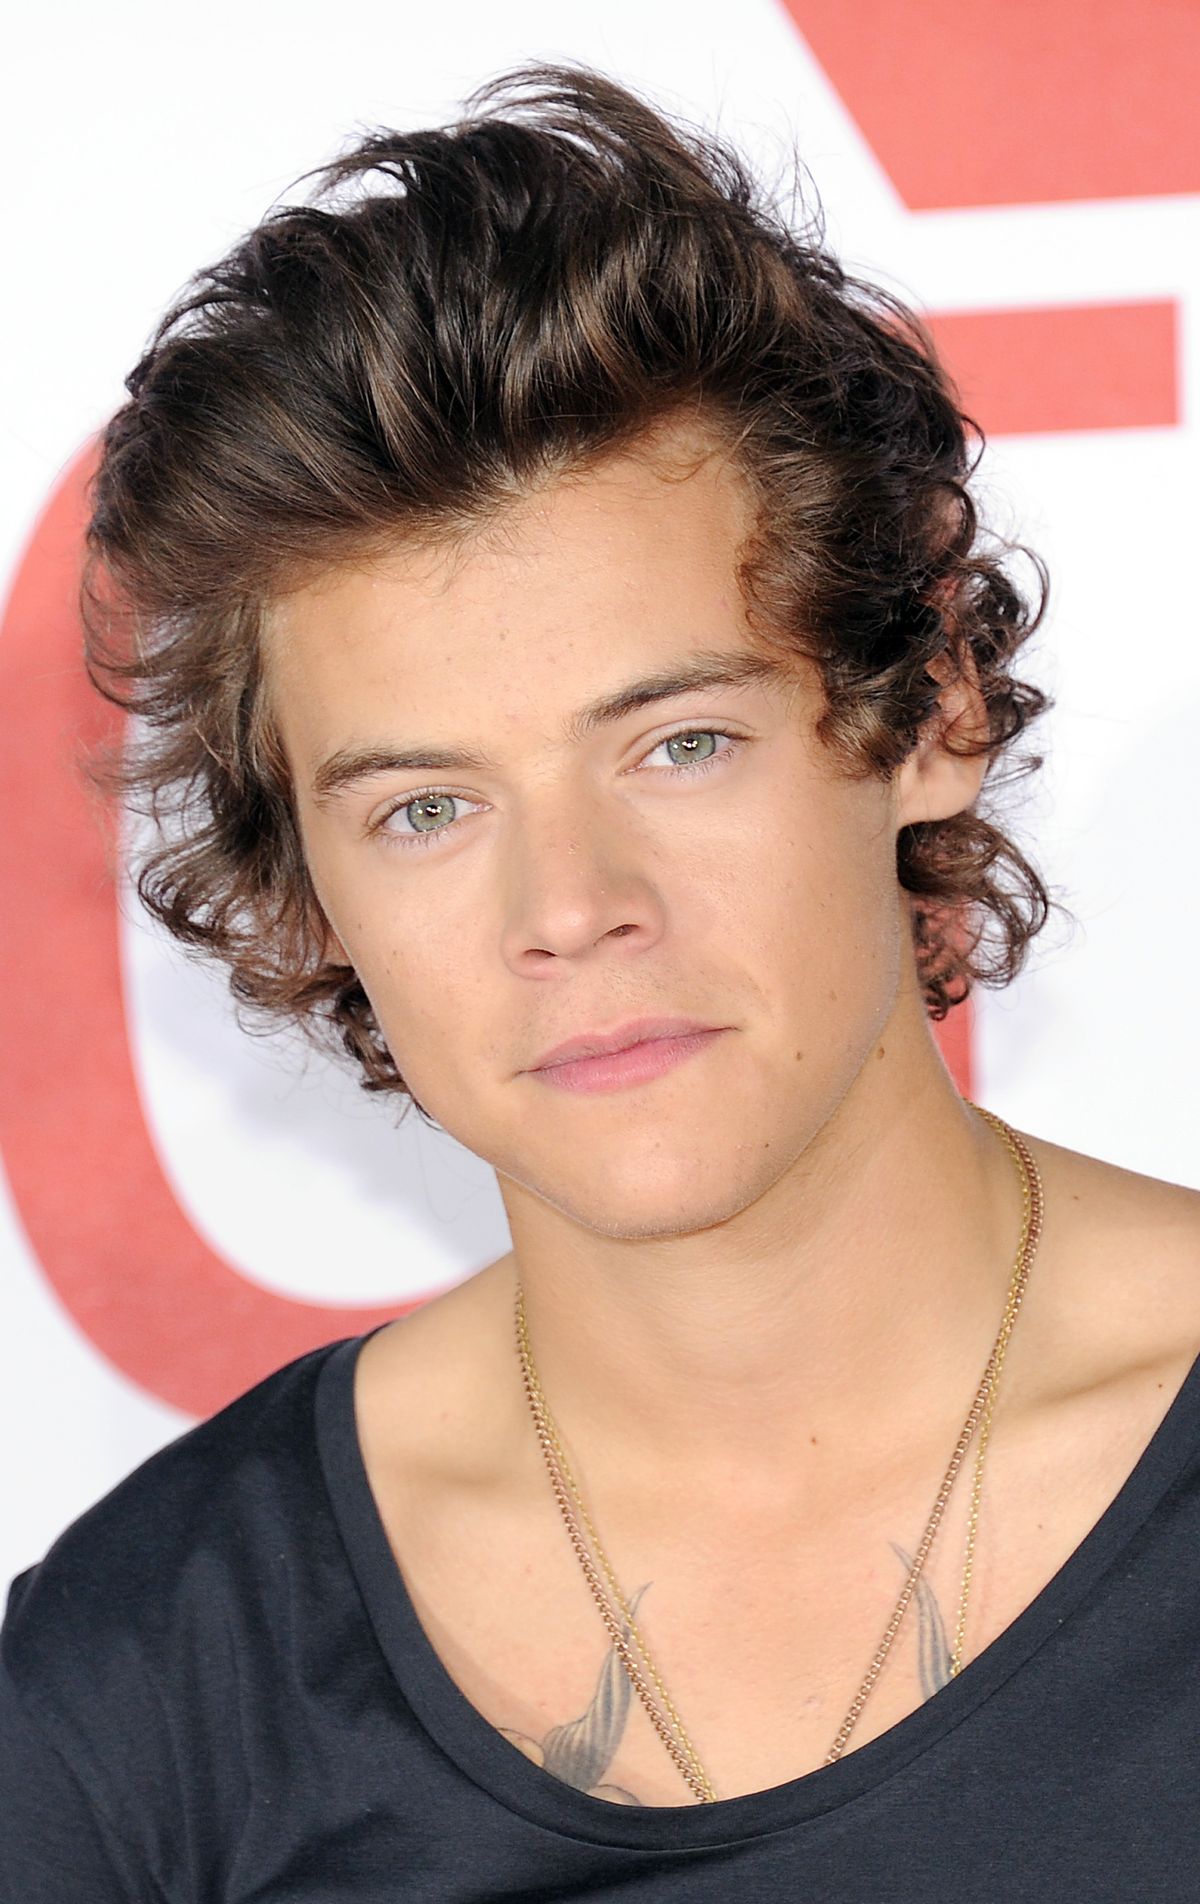 Minkä väriset Harry Stylesin silmät todella ovat?